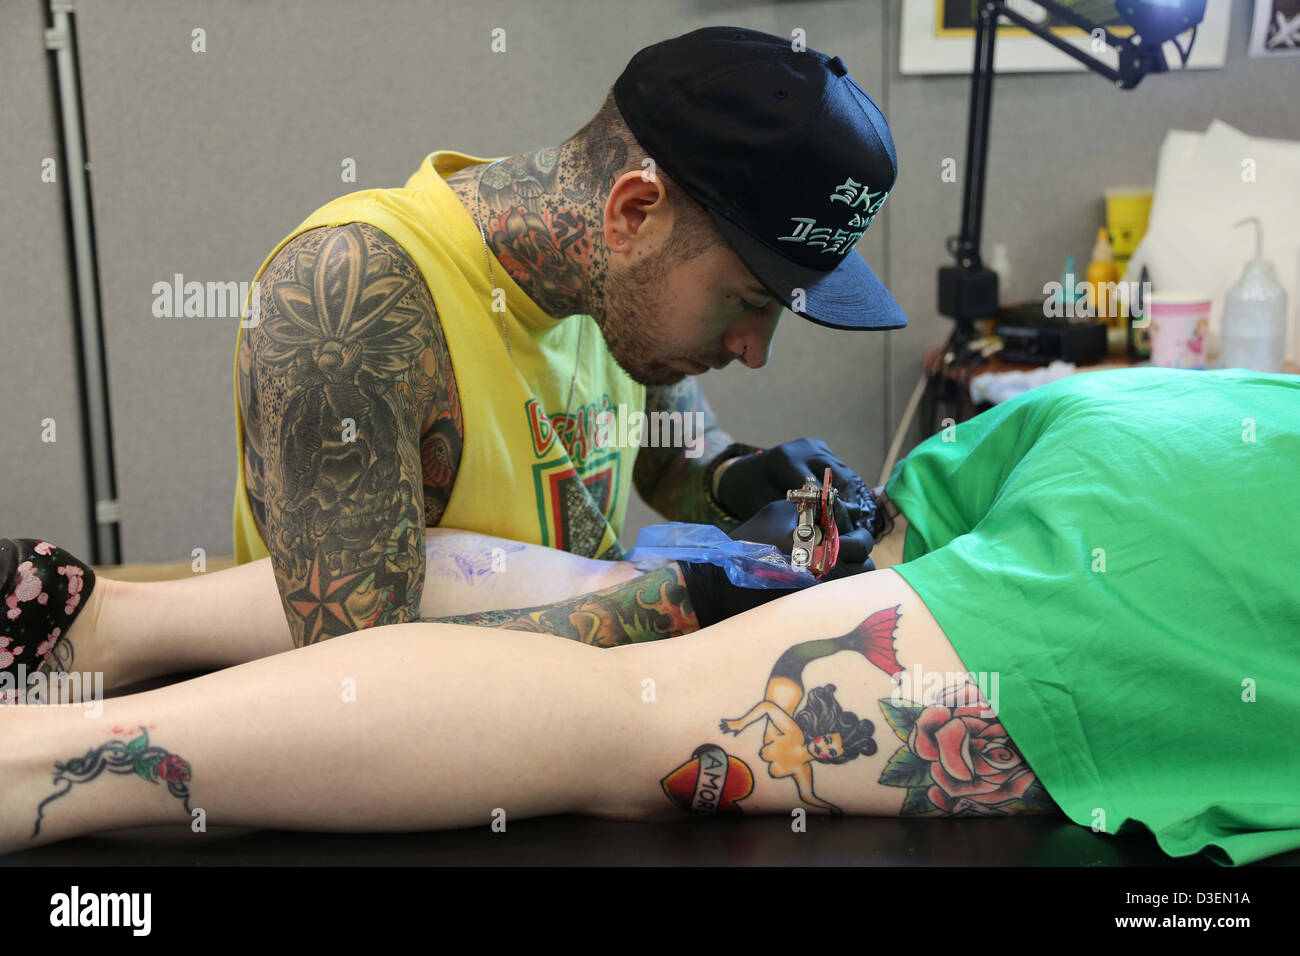 Convention de Tatouage Brighton milliers affluent pour obtenir de nouveaux encrages de célèbres artistes de tatouage. Banque D'Images